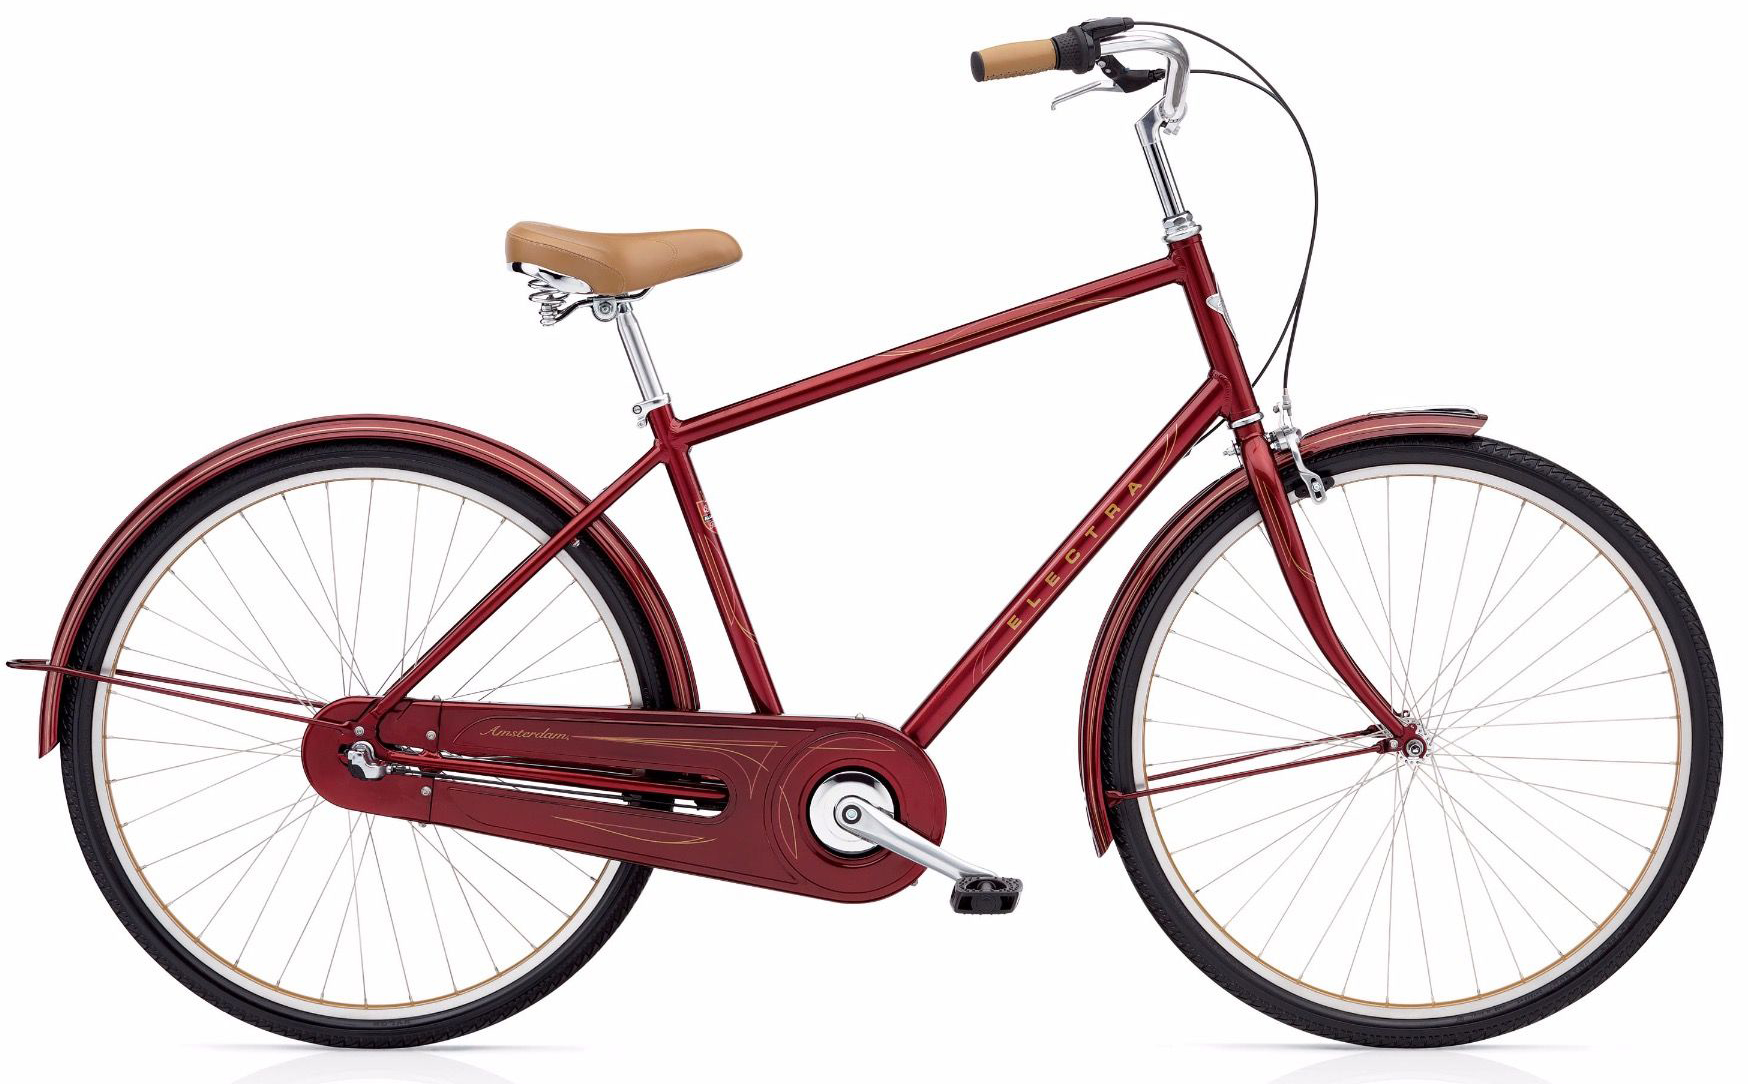  Отзывы о Городском велосипеде Electra Amsterdam Original 3i Men's 2019